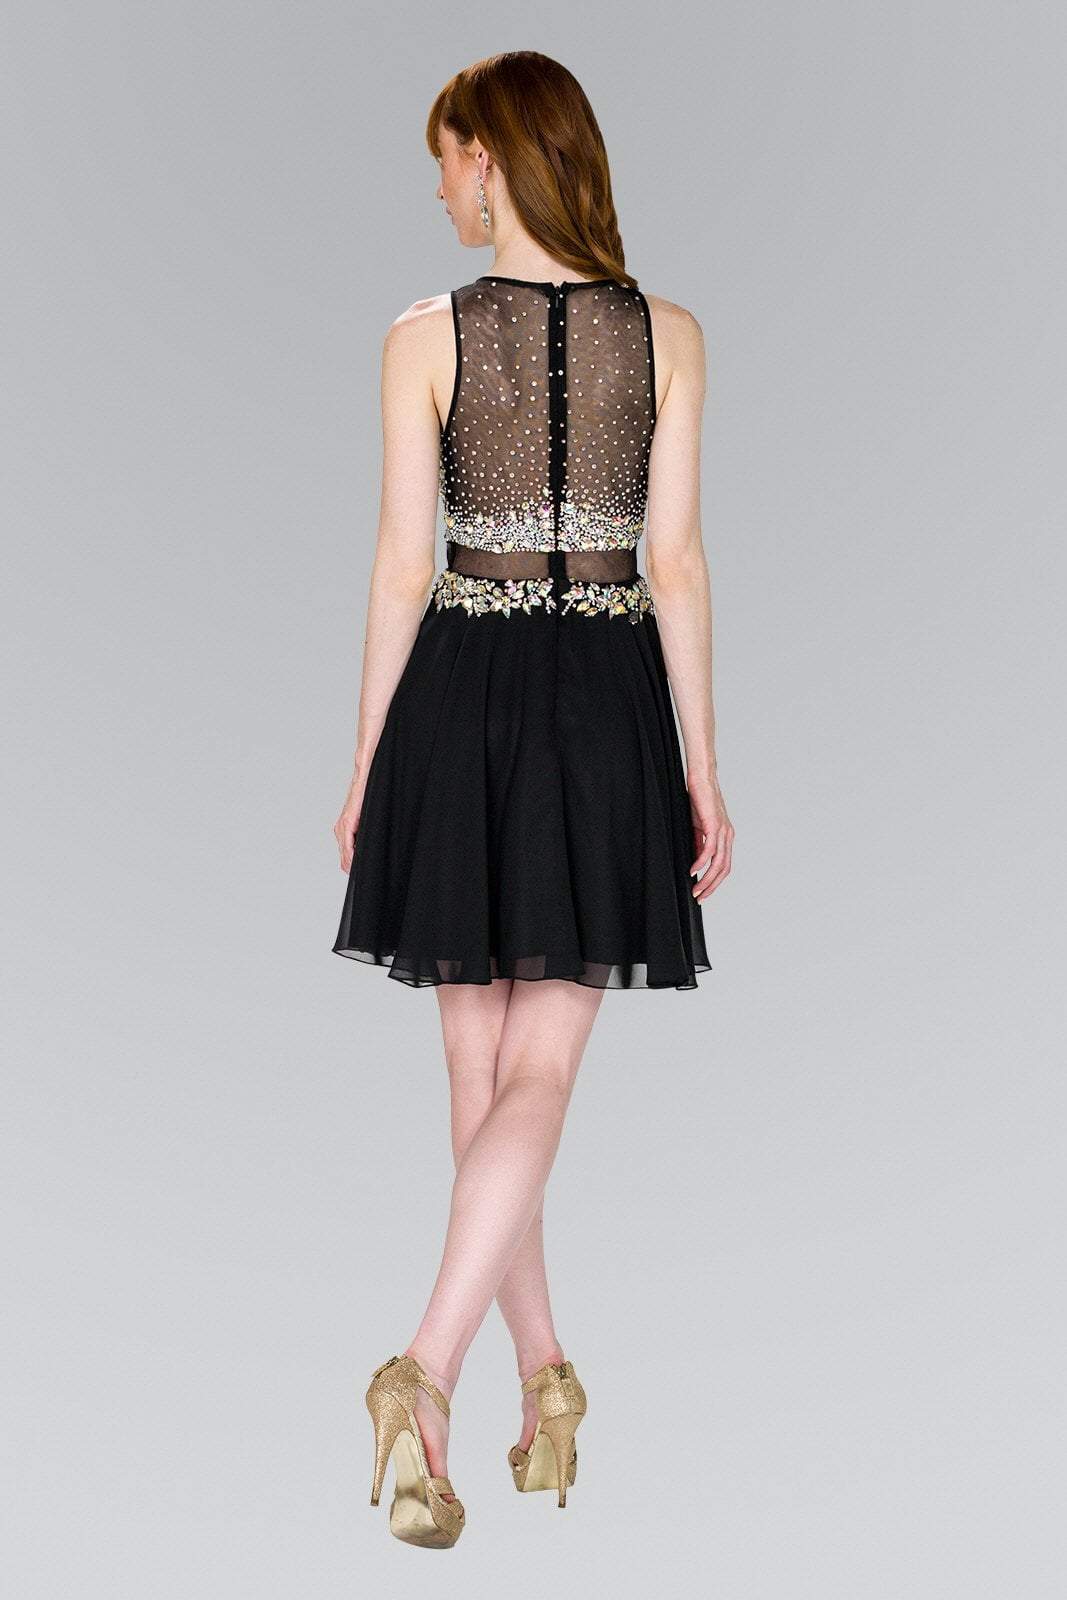 Elizabeth K - GS2401 Beaded Jewel Neck Chiffon A-line Dress in Black